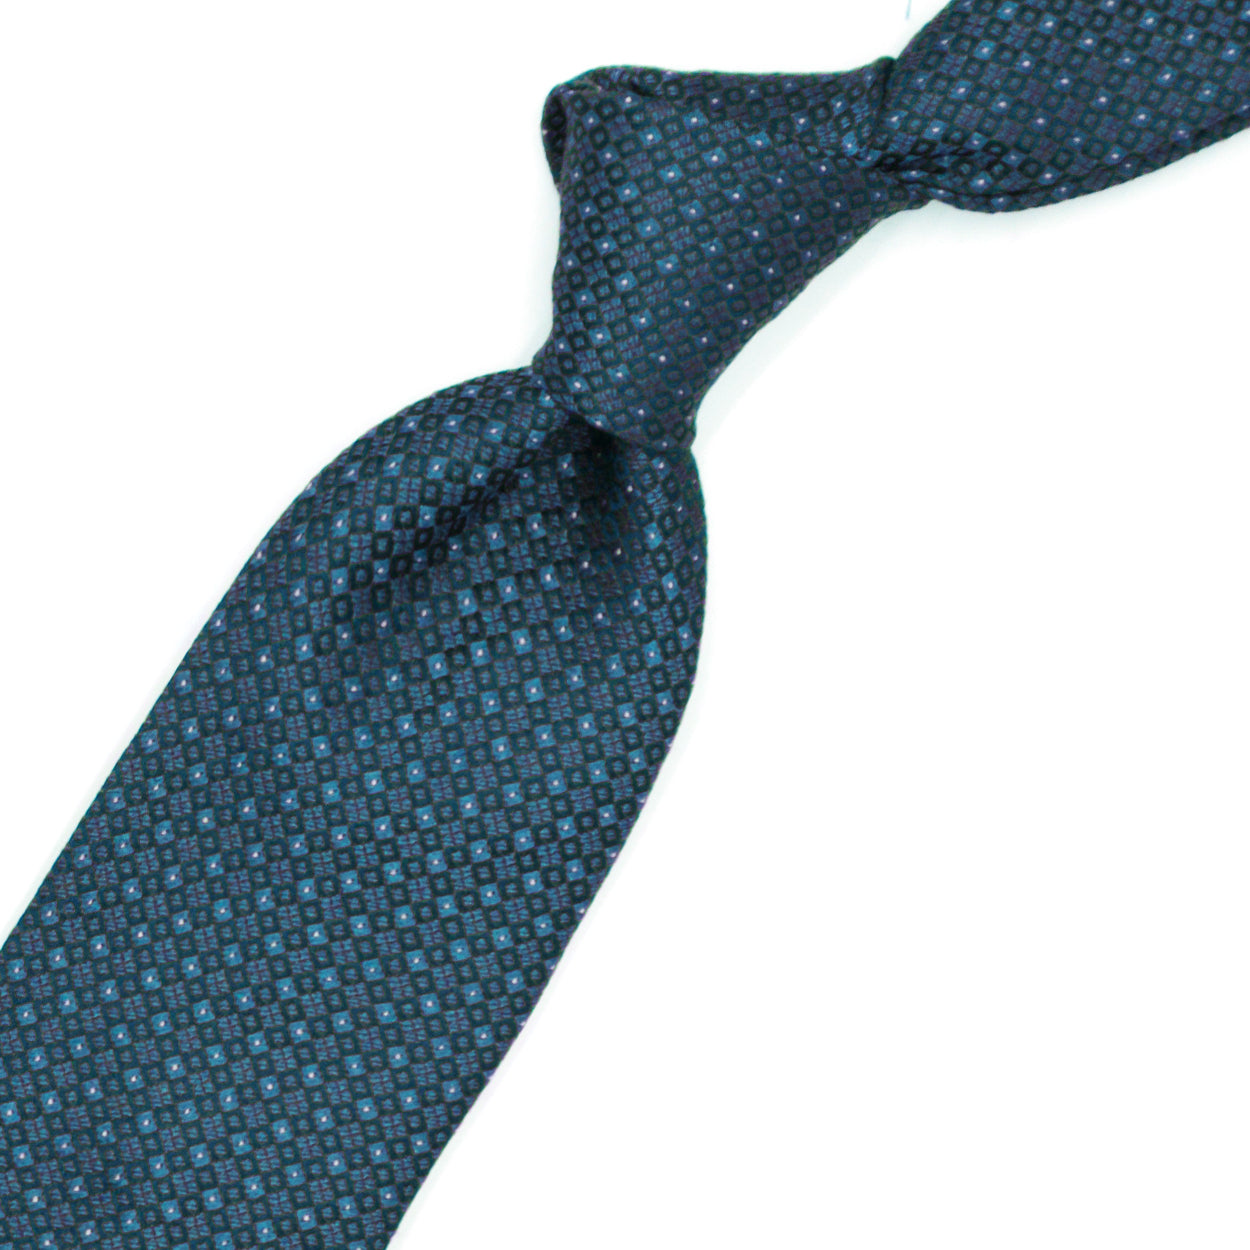 Cravatta azzurra con quadratini blu e puntini bianchi